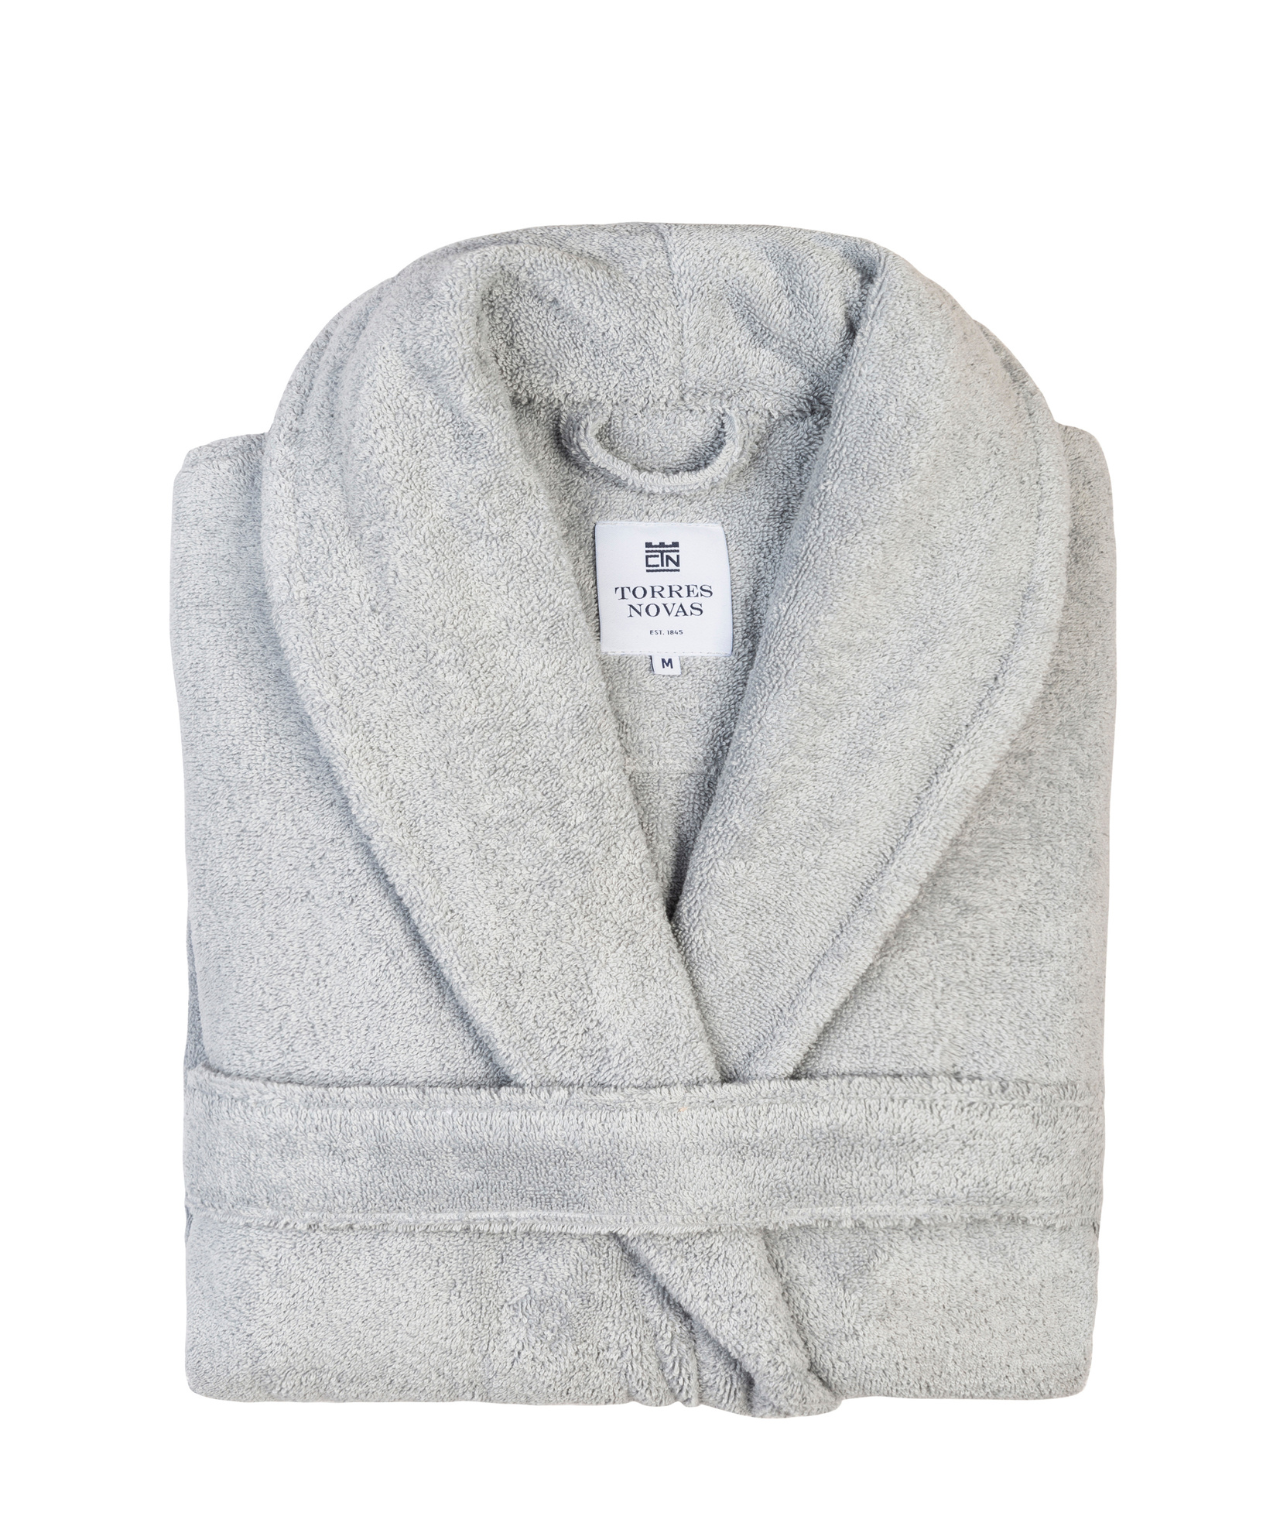 Silver grey bathrobe - Torres Novas